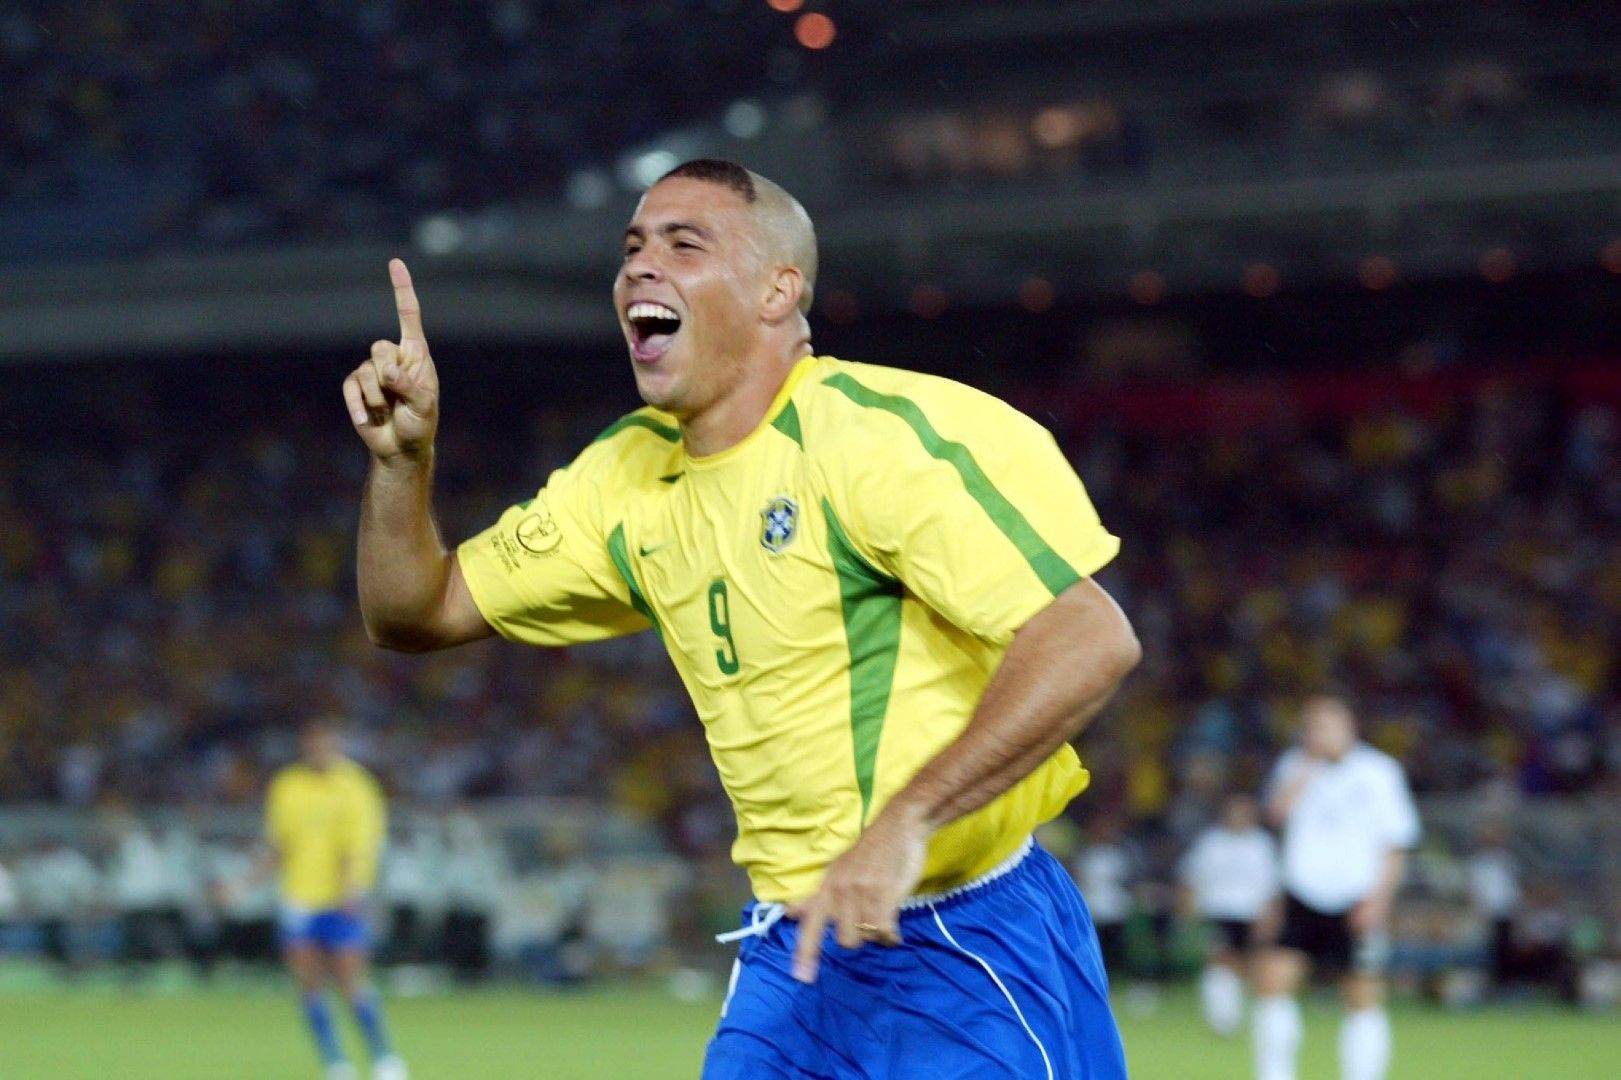 2002 г., Йокохама. Петата купа за Бразилия обаче идва от следващия опит. А този човек - Феномена Роналдо, я носи с два гола за 2:0 на финала срещу Германия.